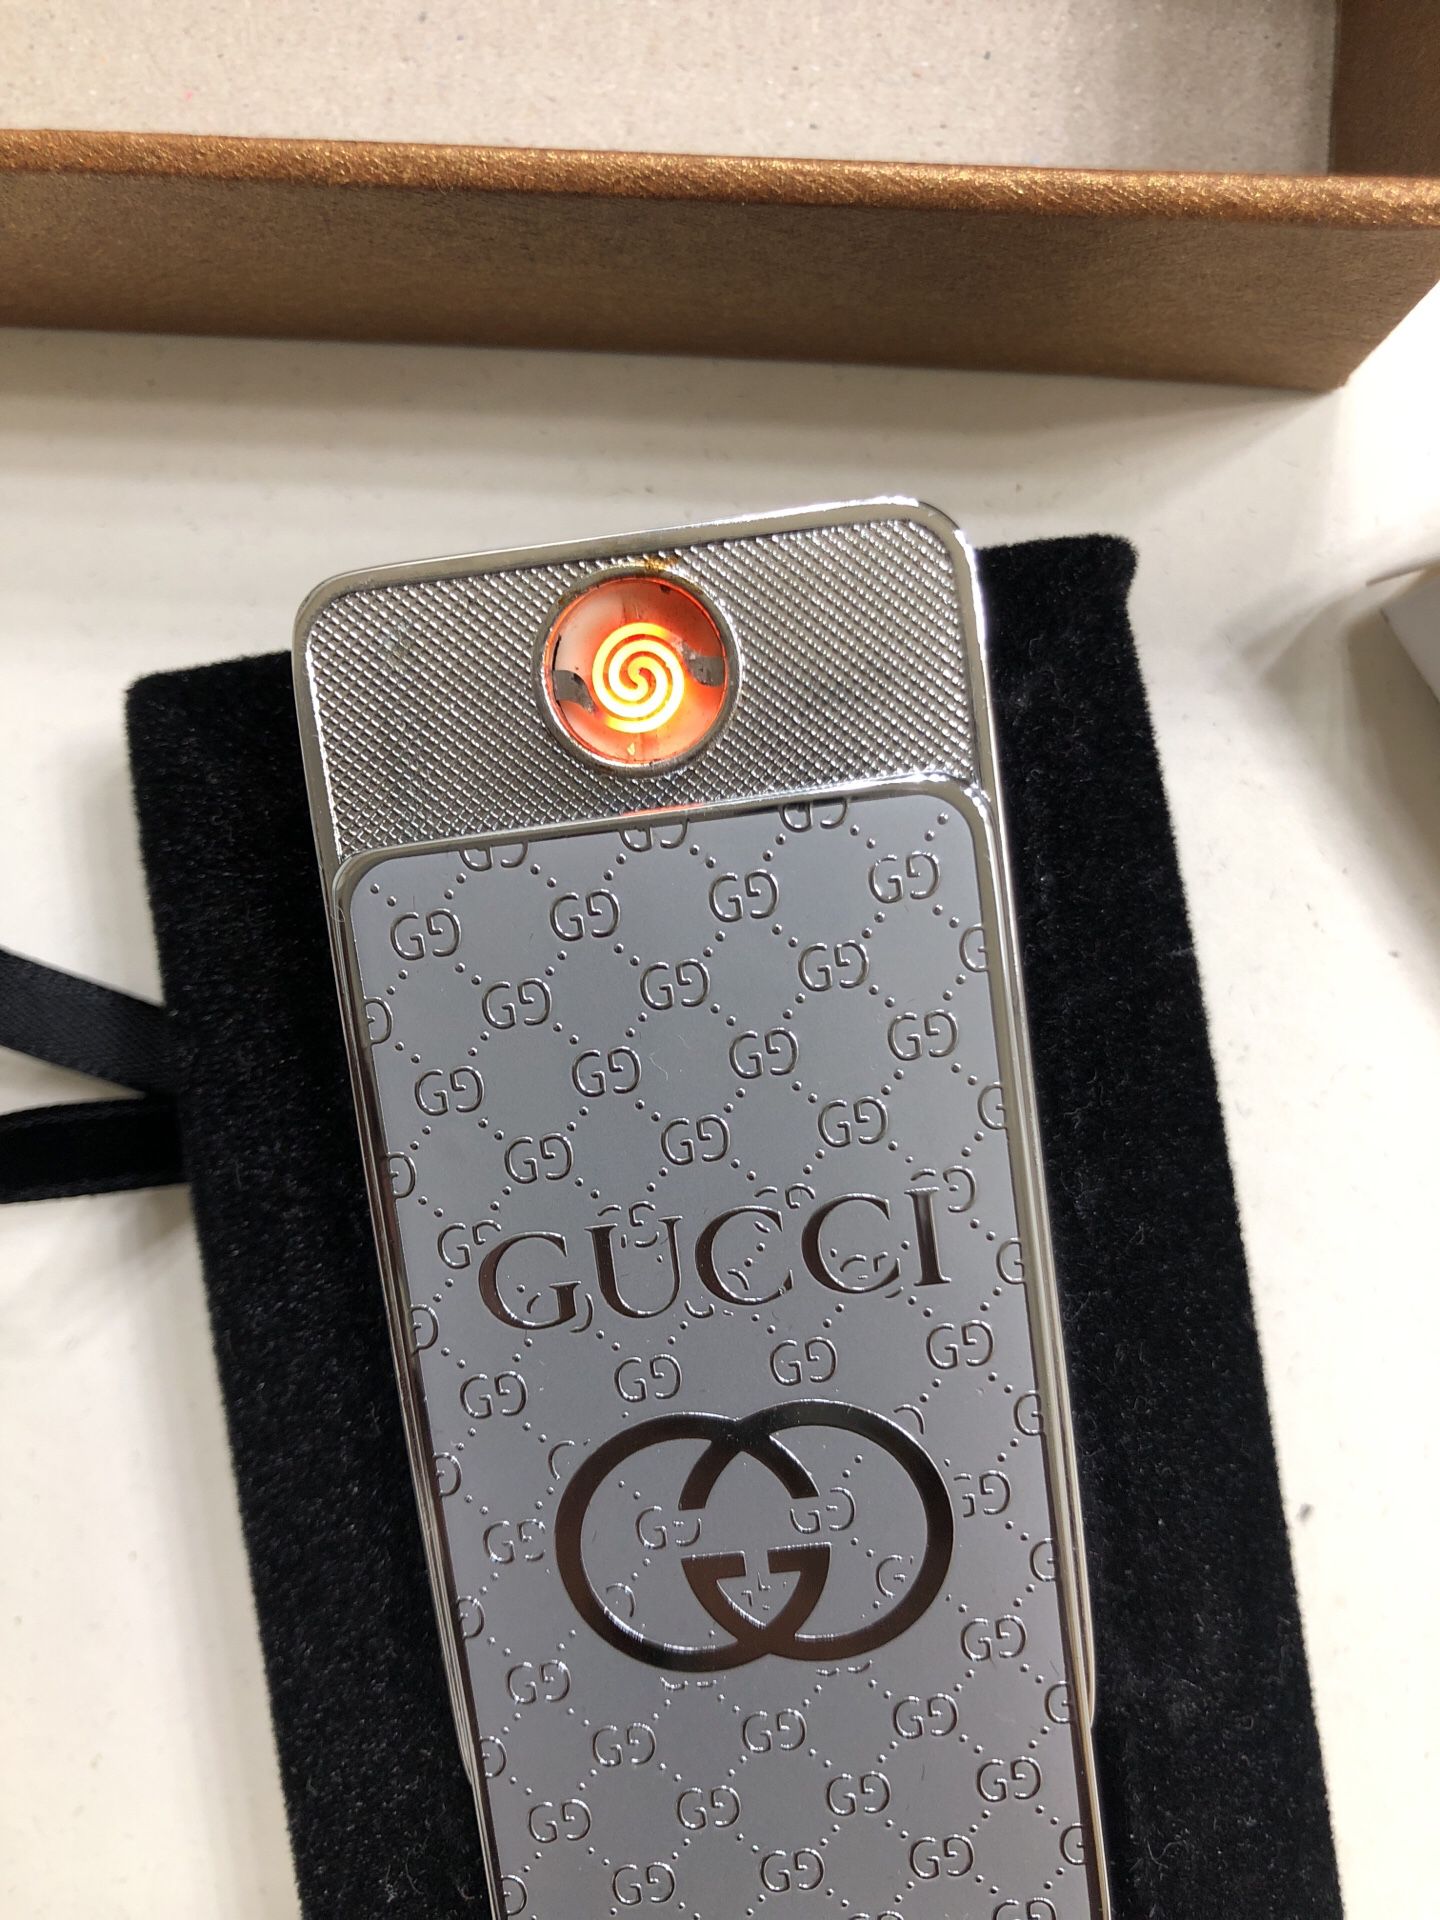 (PO) LV / Gucci Usb Lighter